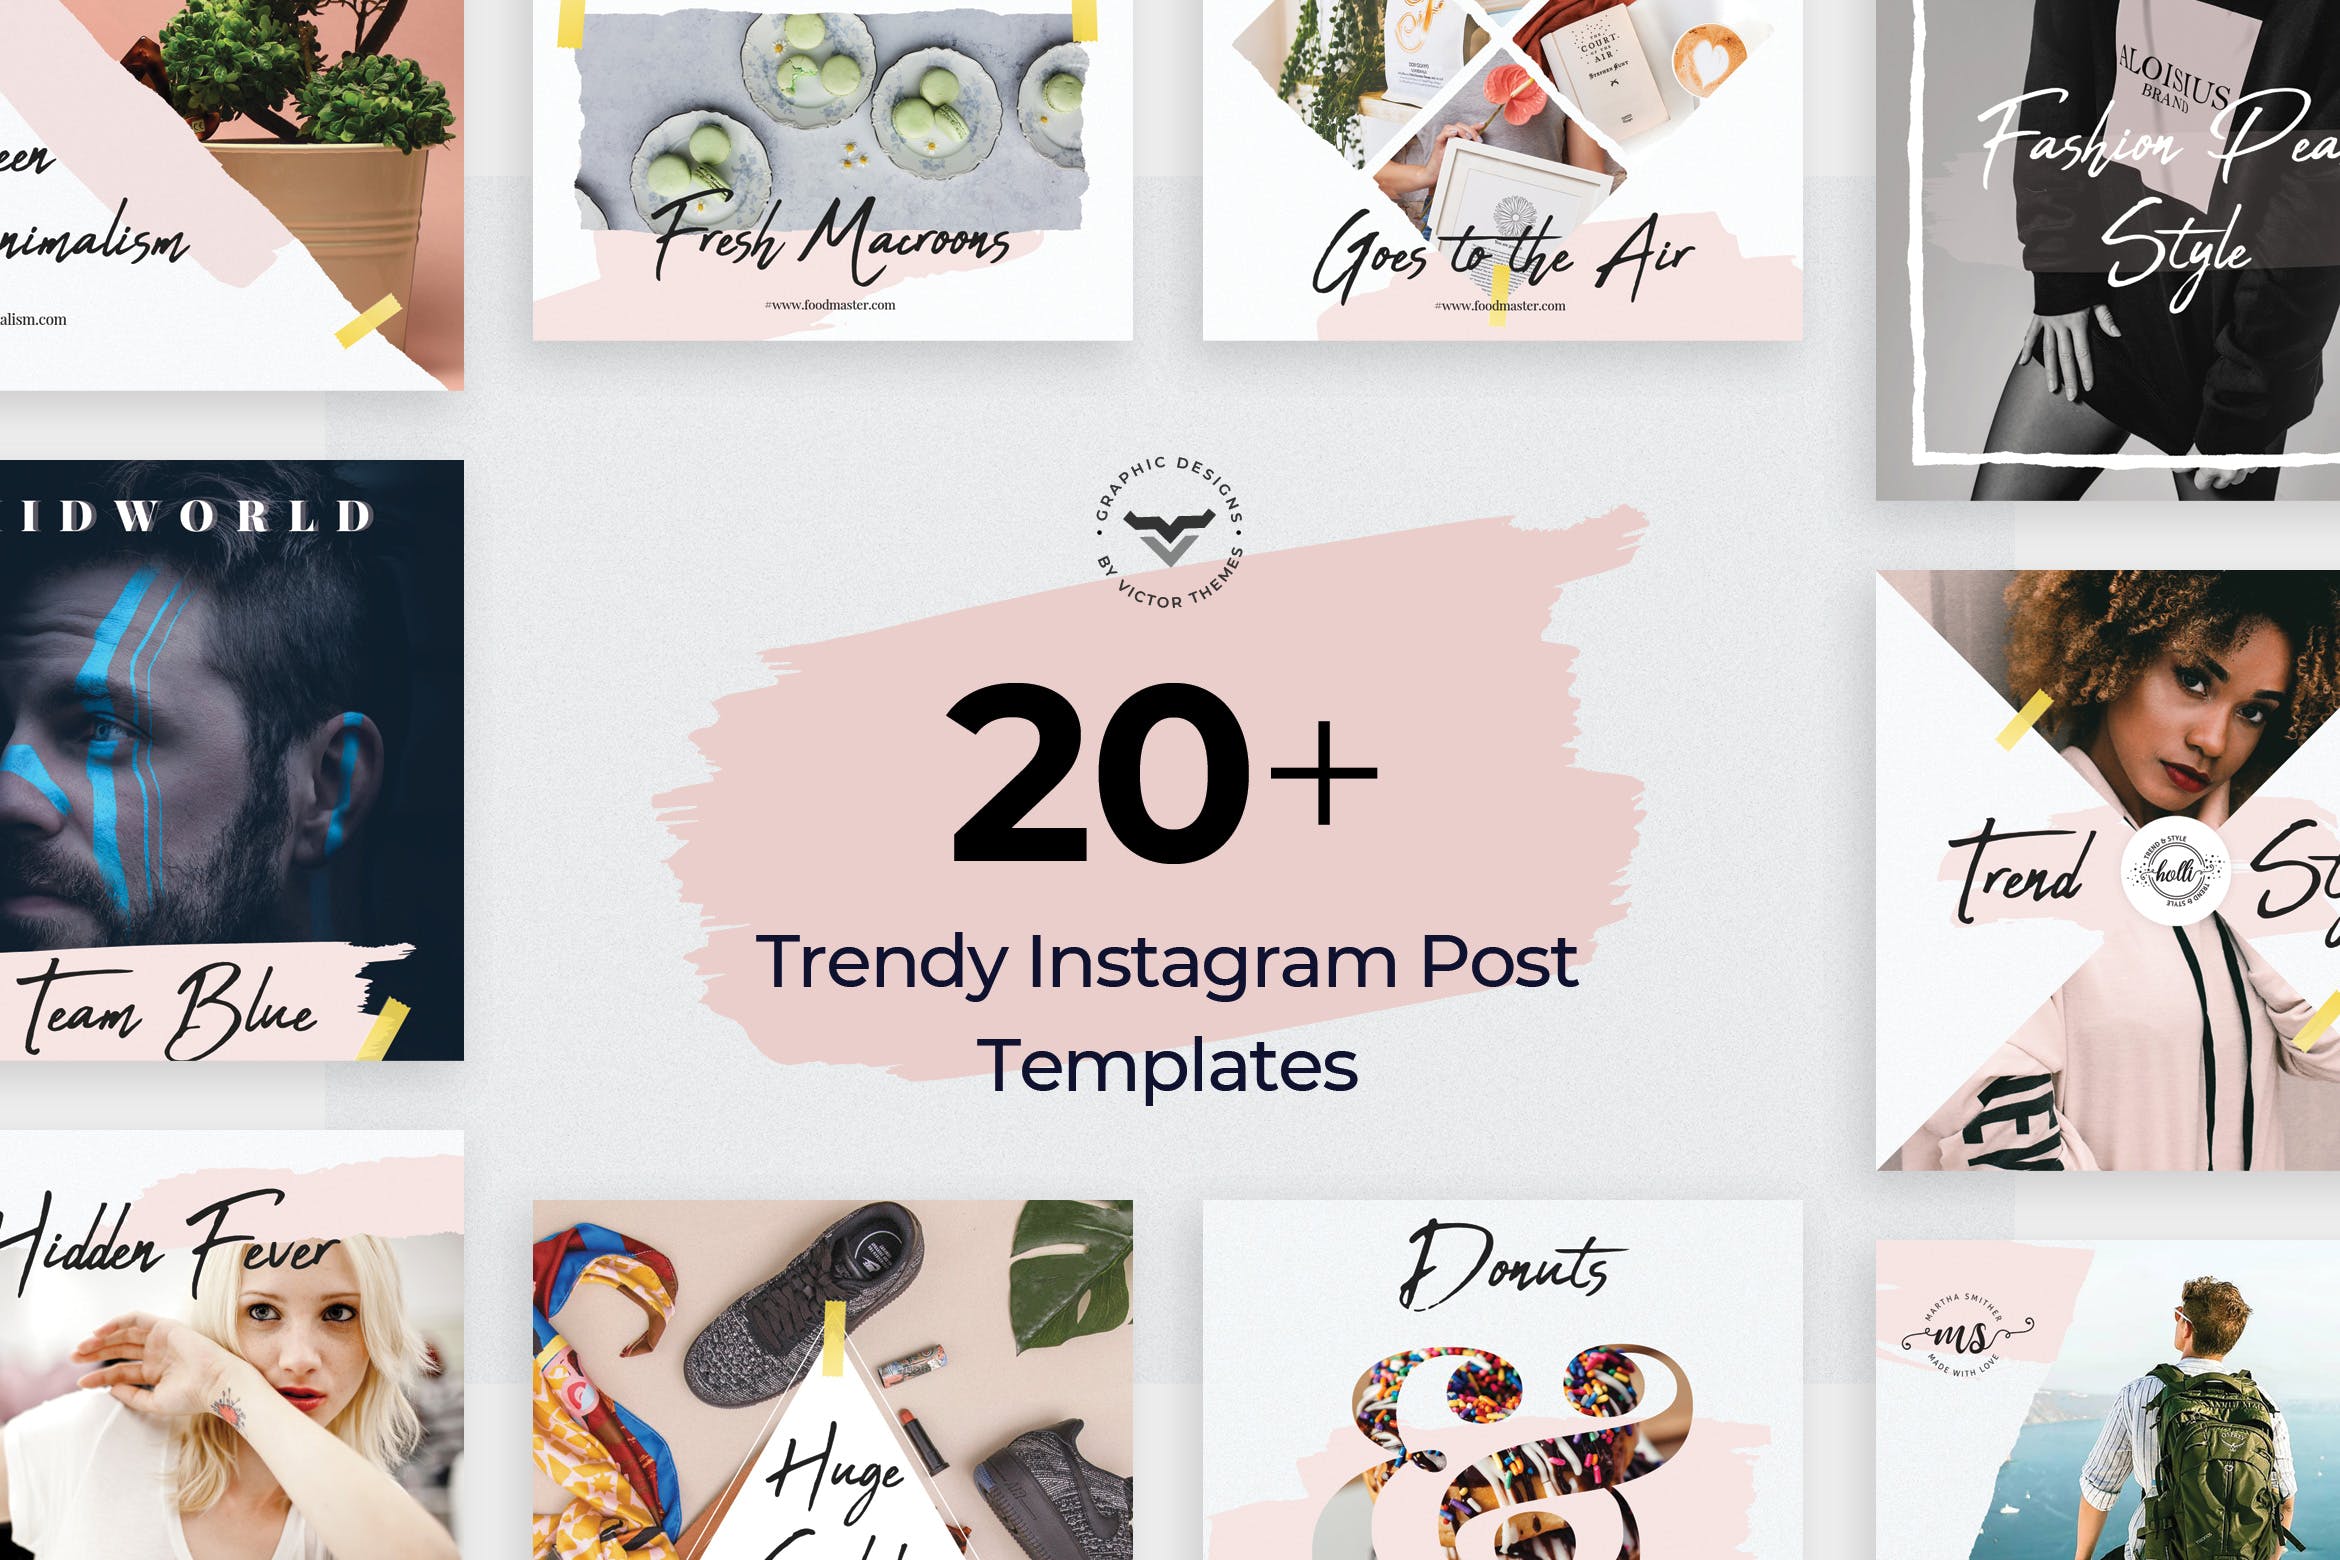 20+创意便利贴设计风格Instagram社交贴图模板蚂蚁素材精选 Instagram Post Templates插图